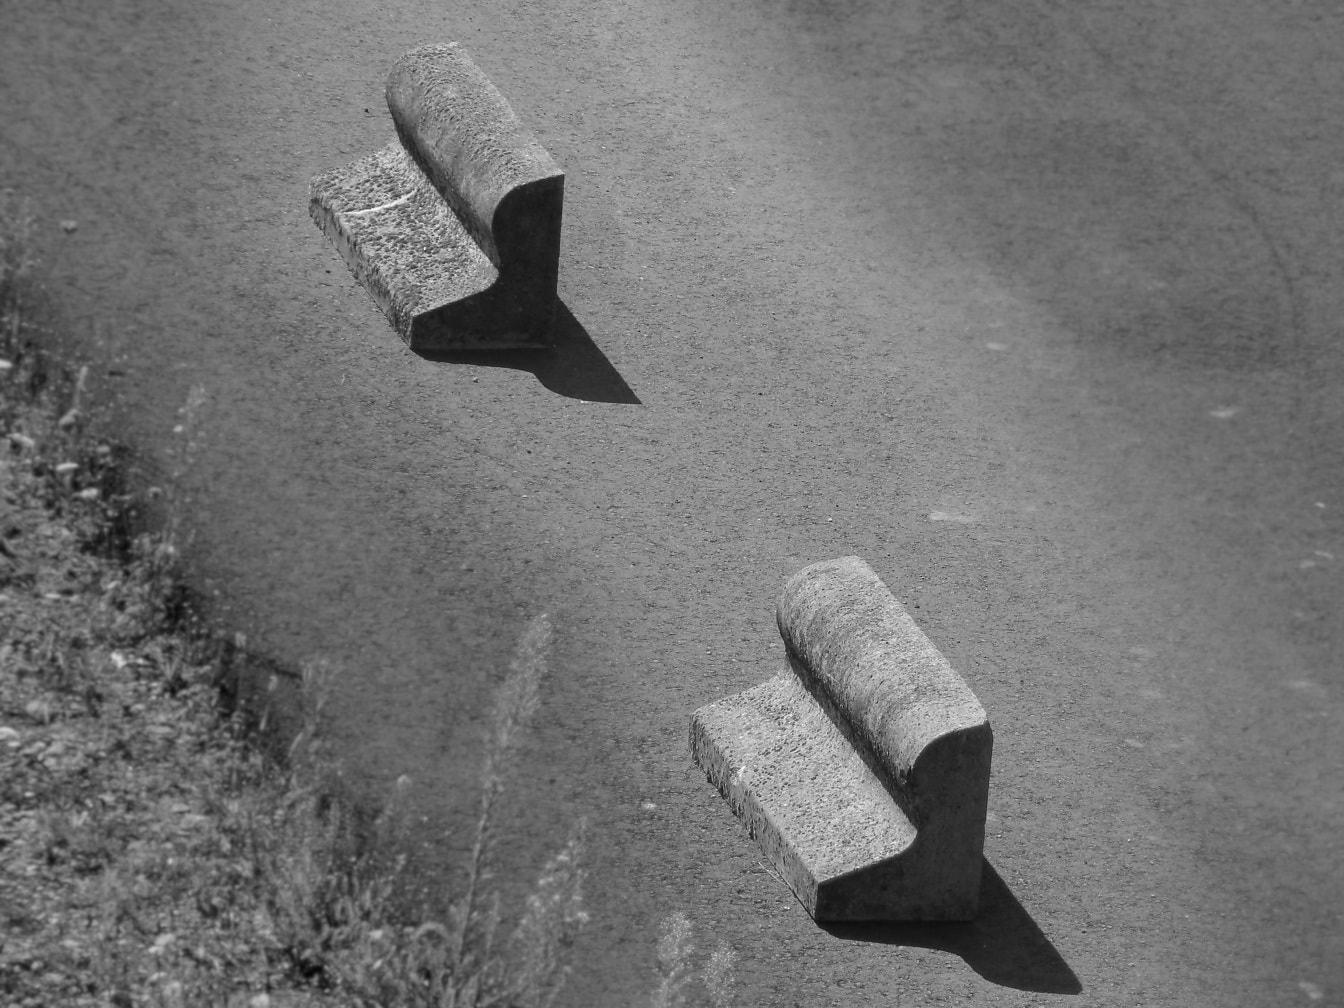 アスファルト道路上のコンクリート歪んだ形状ブロックのモノクロ写真